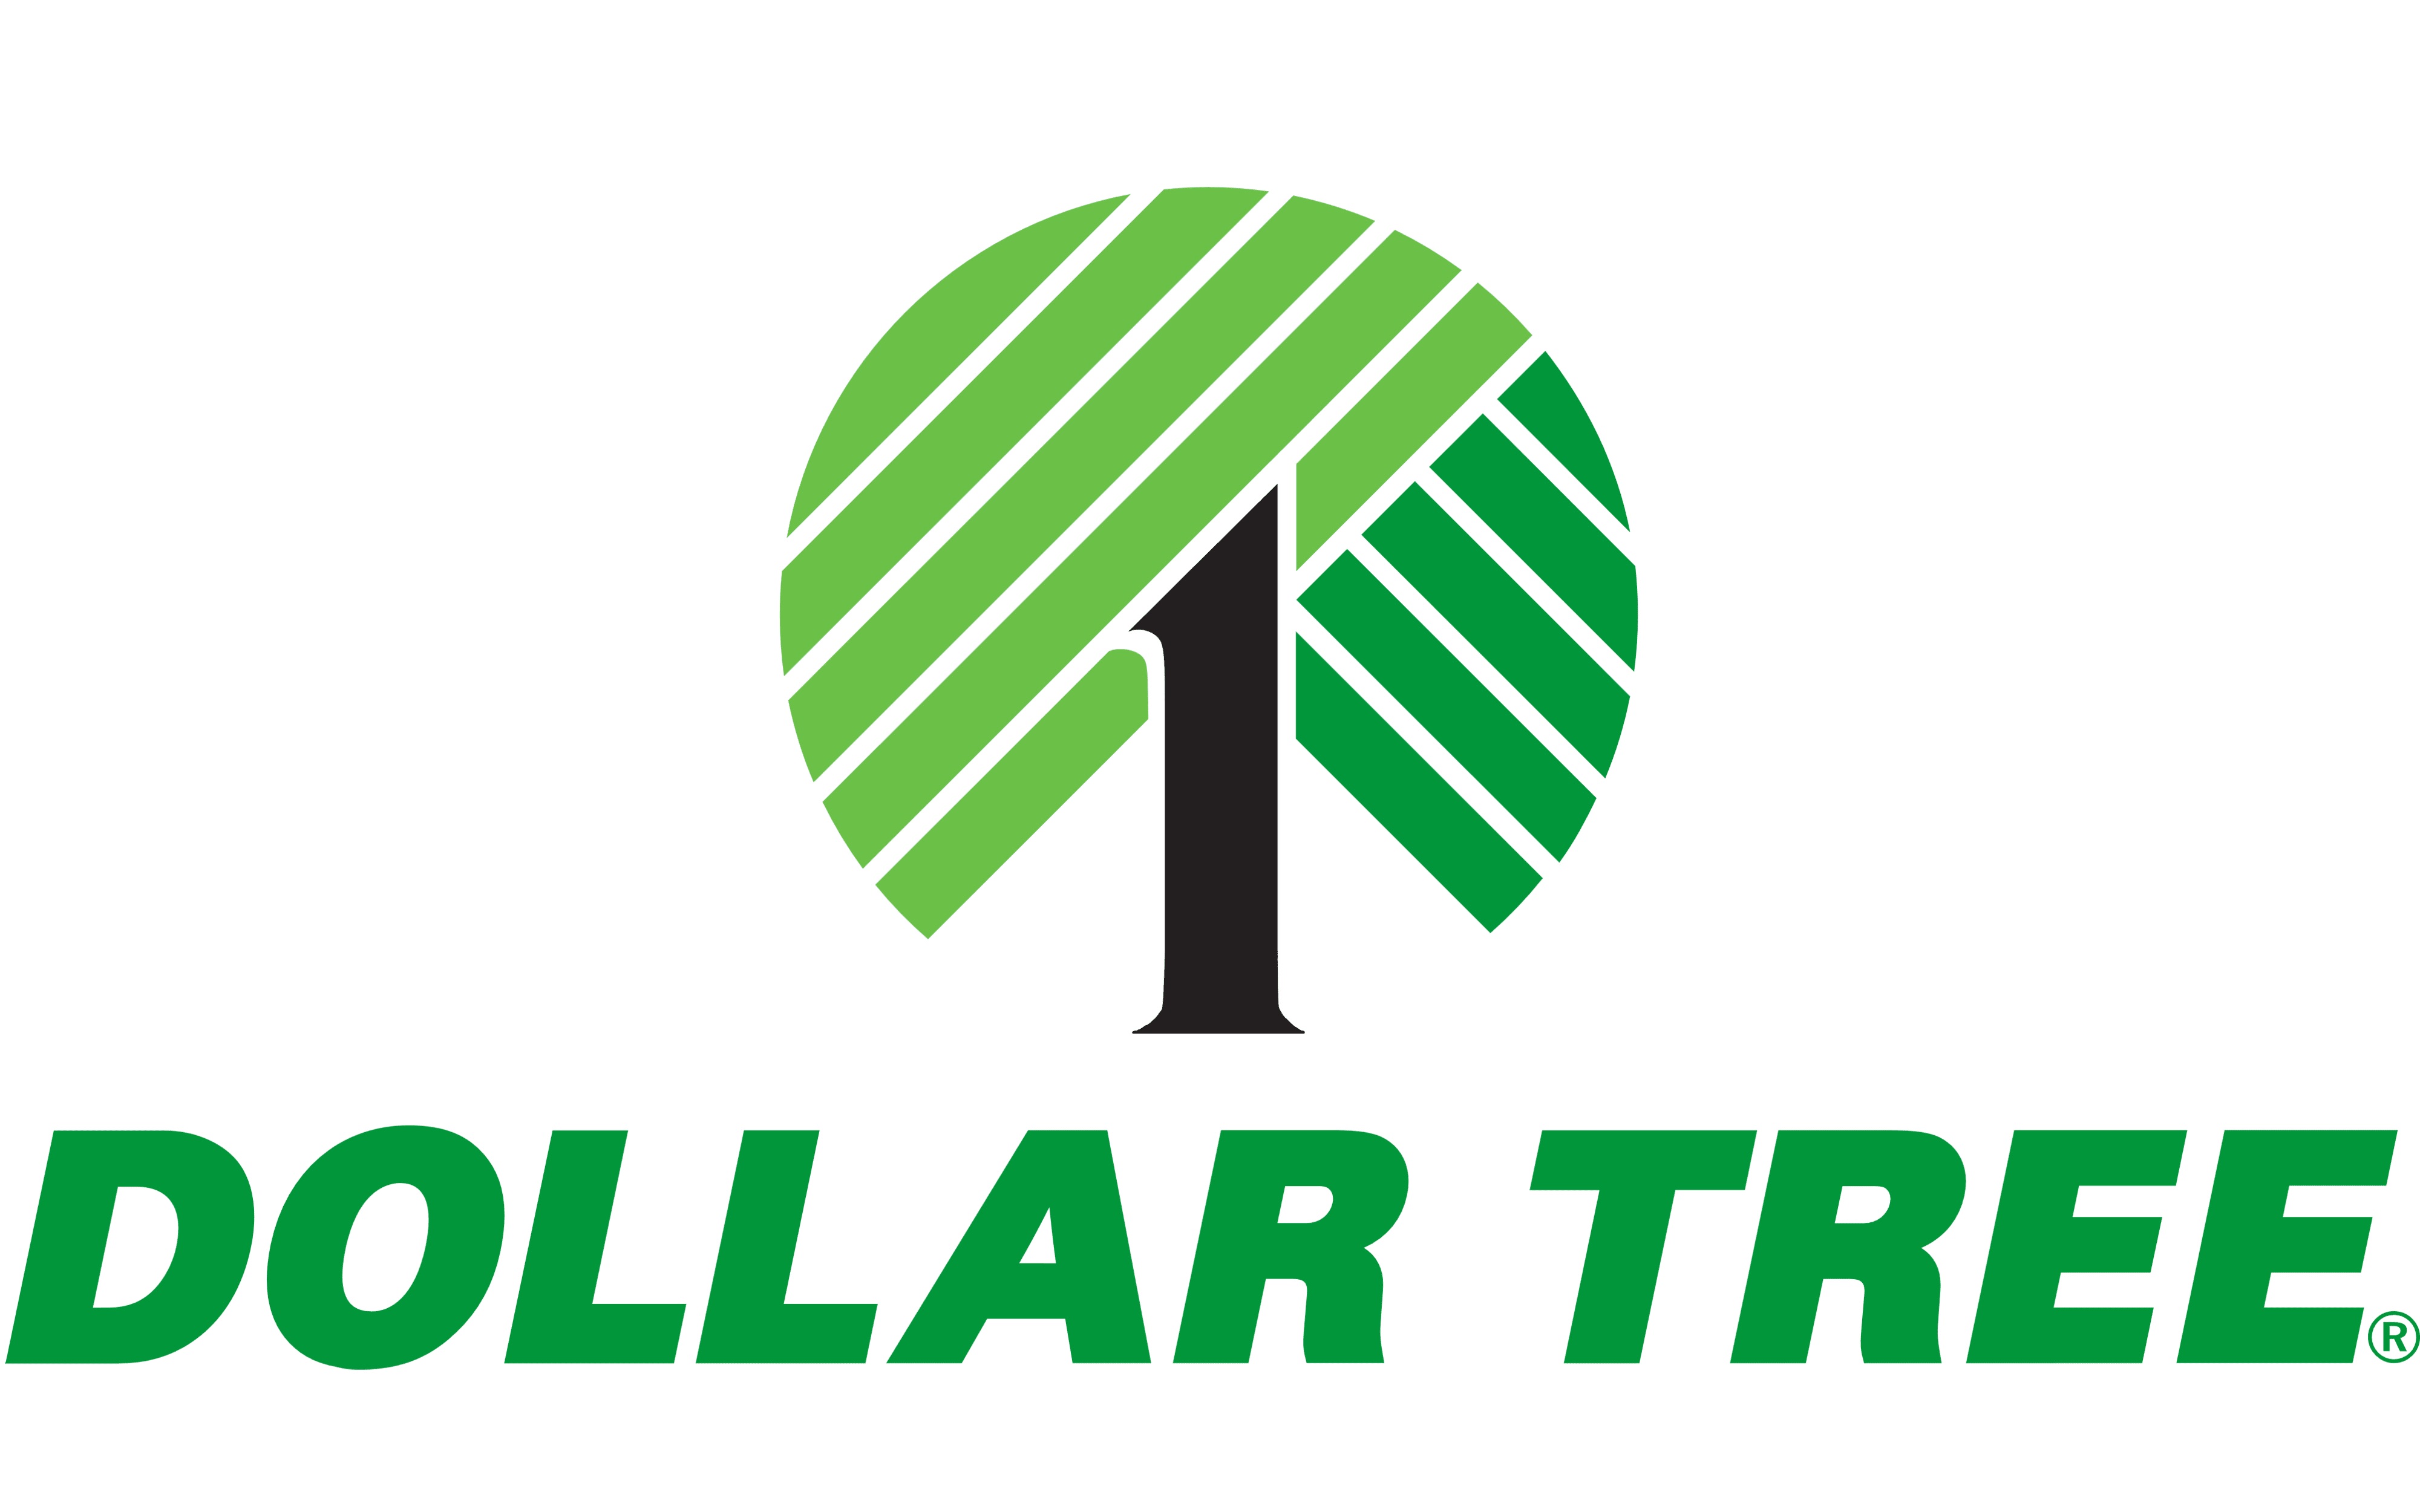 Dollar Tree uses this logo below